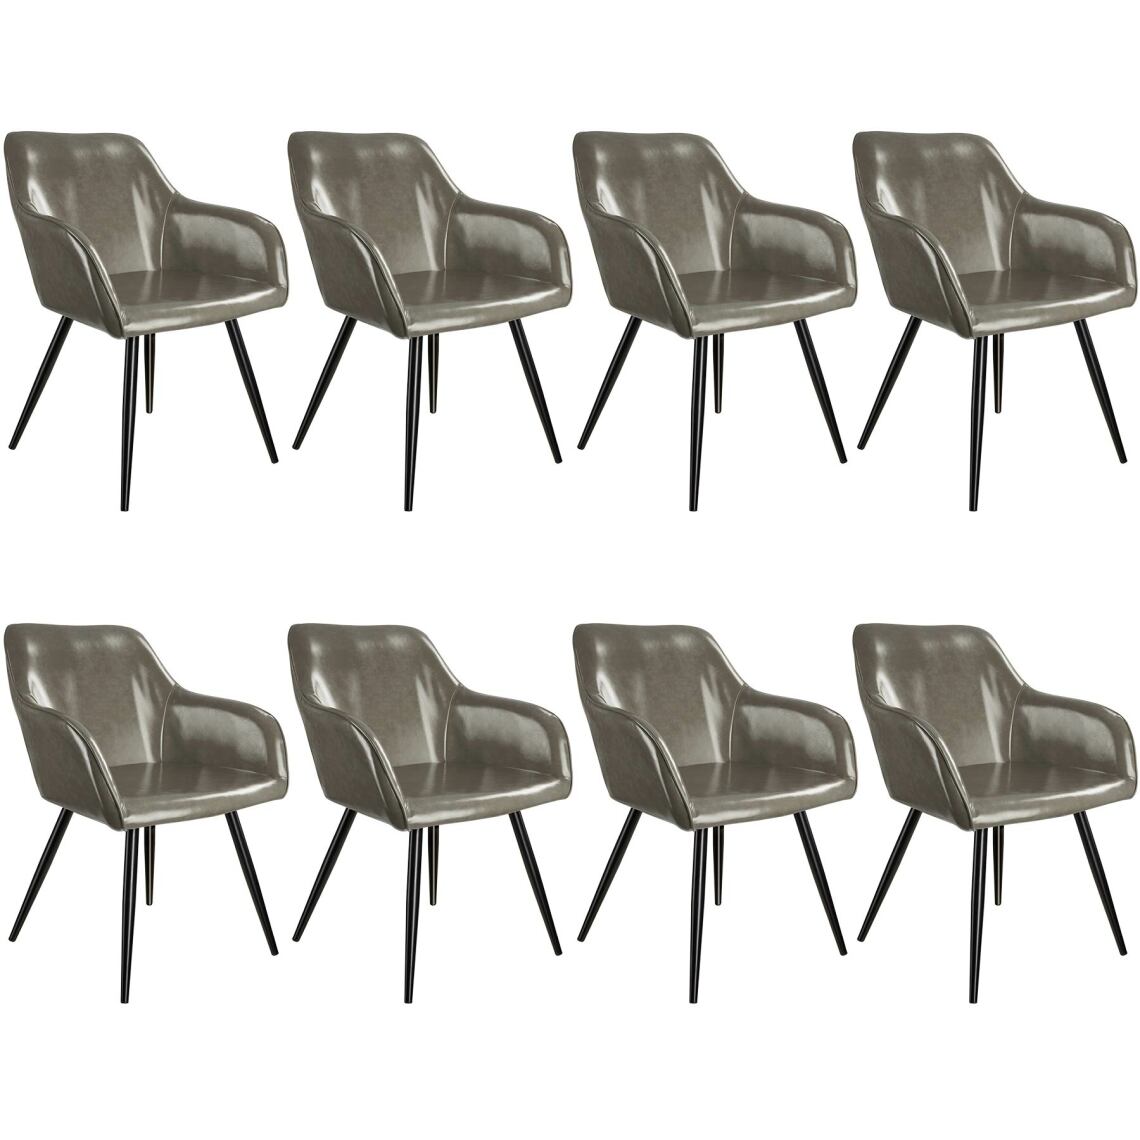 Tectake - 8 Chaises Marilyn en cuir synthétique - gris foncé-noir - Chaises